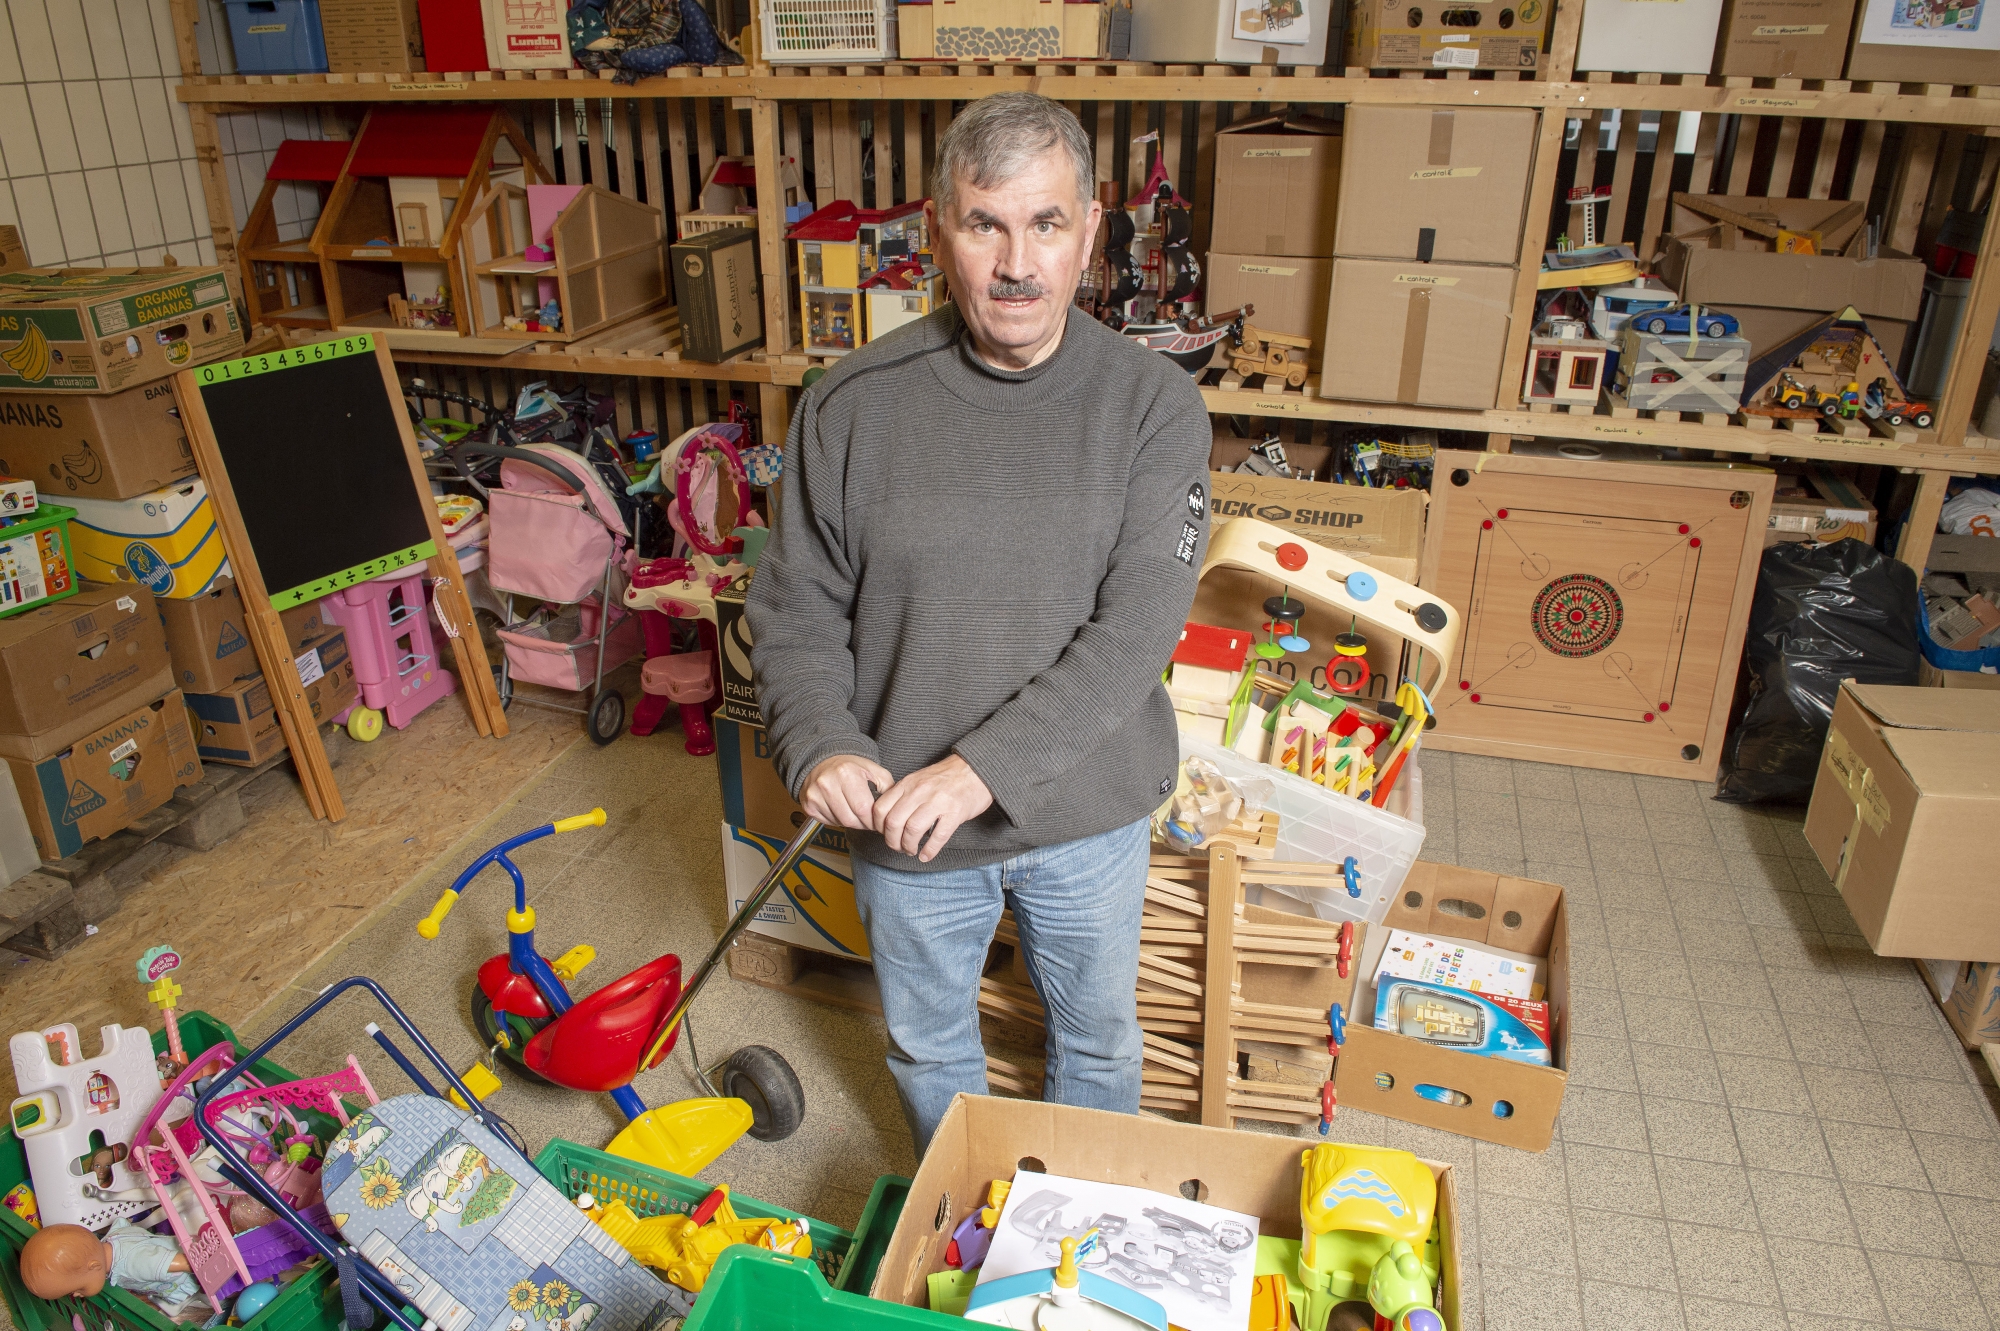 A la recherche d'un emploi depuis deux ans, Léo Masseraz répare des jouets dans l'atelier du Dé Magique de l'OSEO Valais depuis le mois d'octobre.